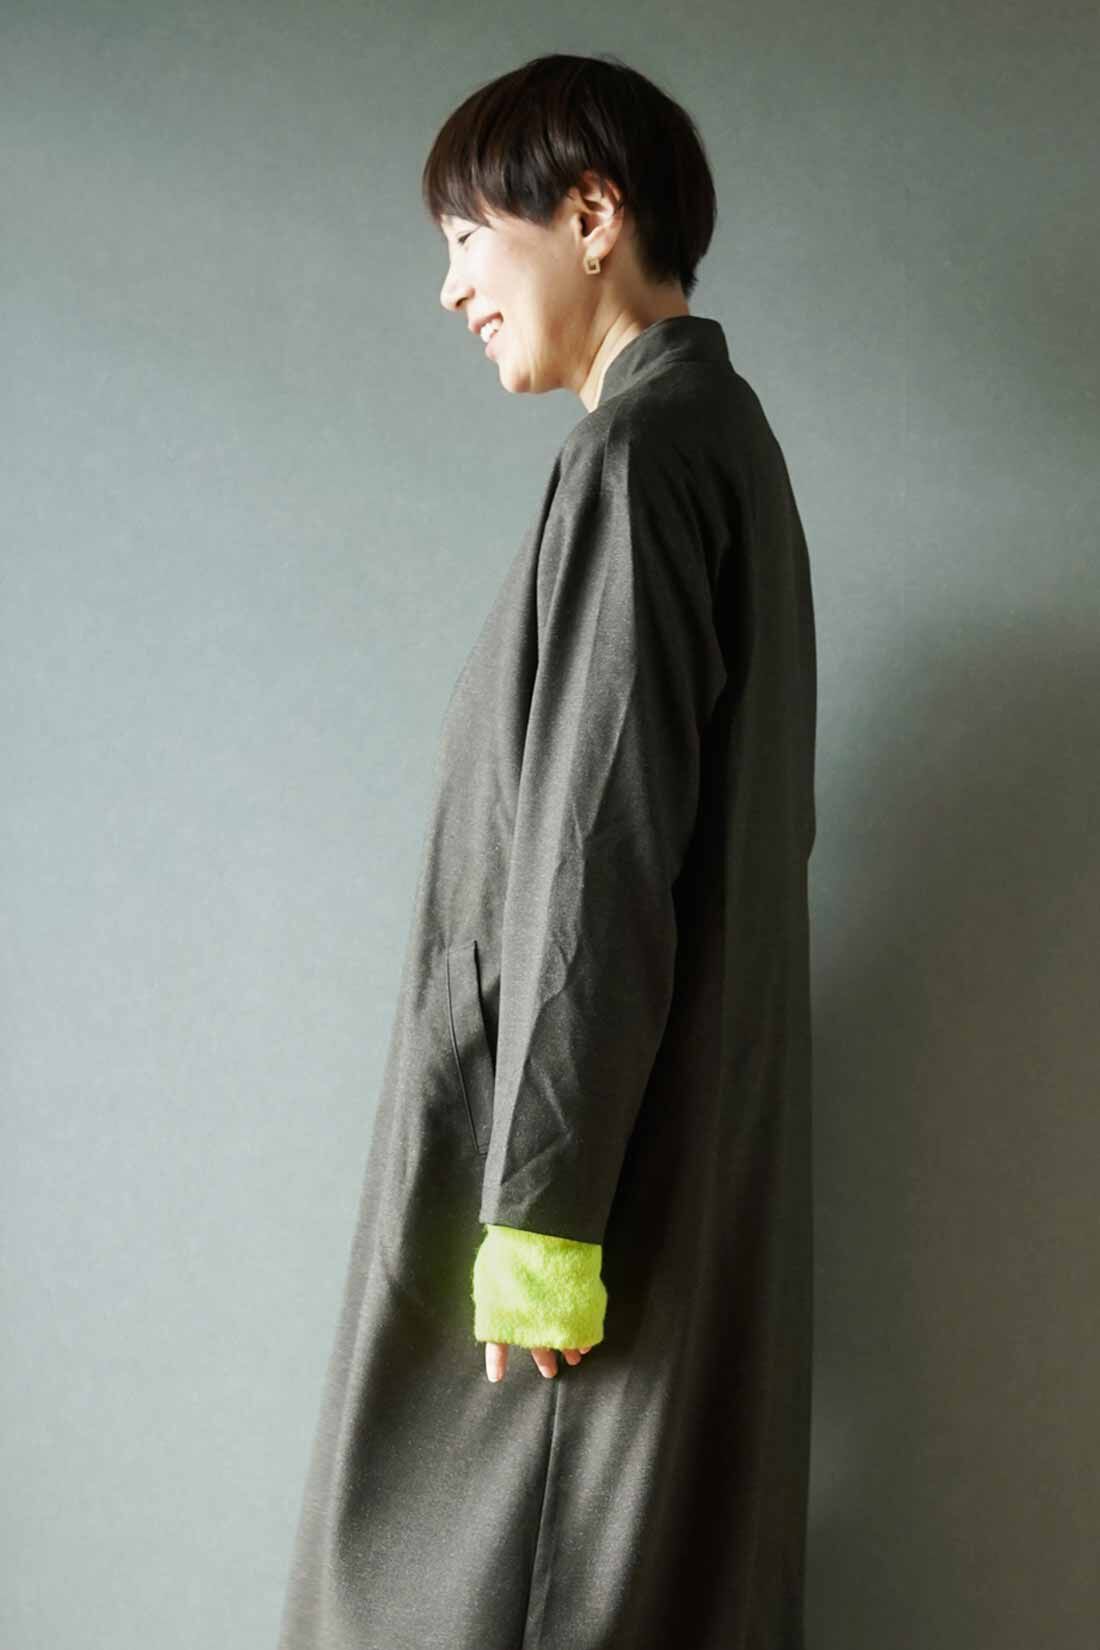 THREE FIFTY STANDARD|THREE FIFTY STANDARD 金子敦子さんと作った 蛍光ペン色ツートーンカラー 内側シルク混のアームウォーマーの会|発色のいいミントグリーンを、コートの袖口からのぞかせてポイントに。